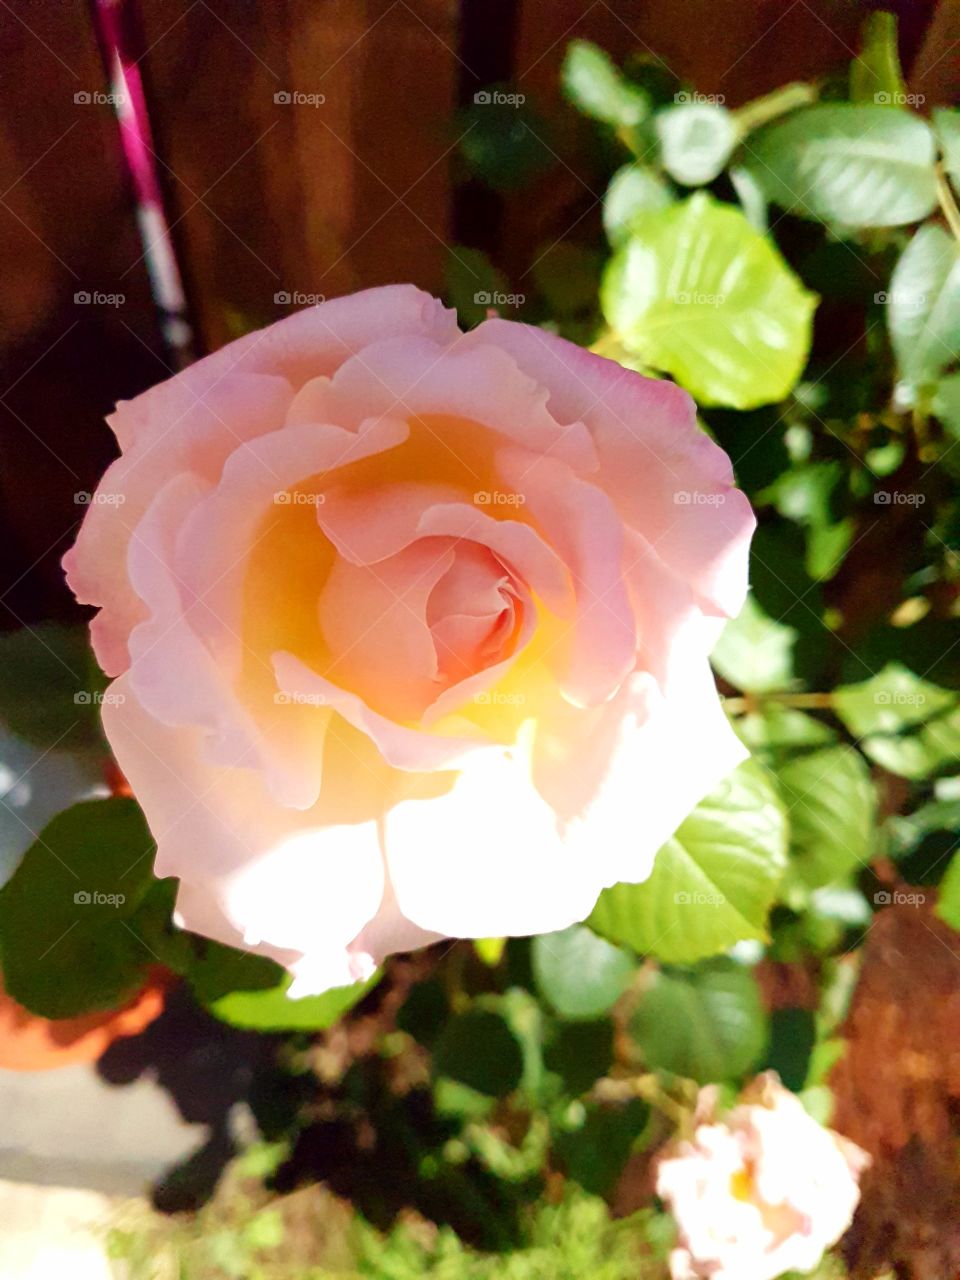 pink rose 5